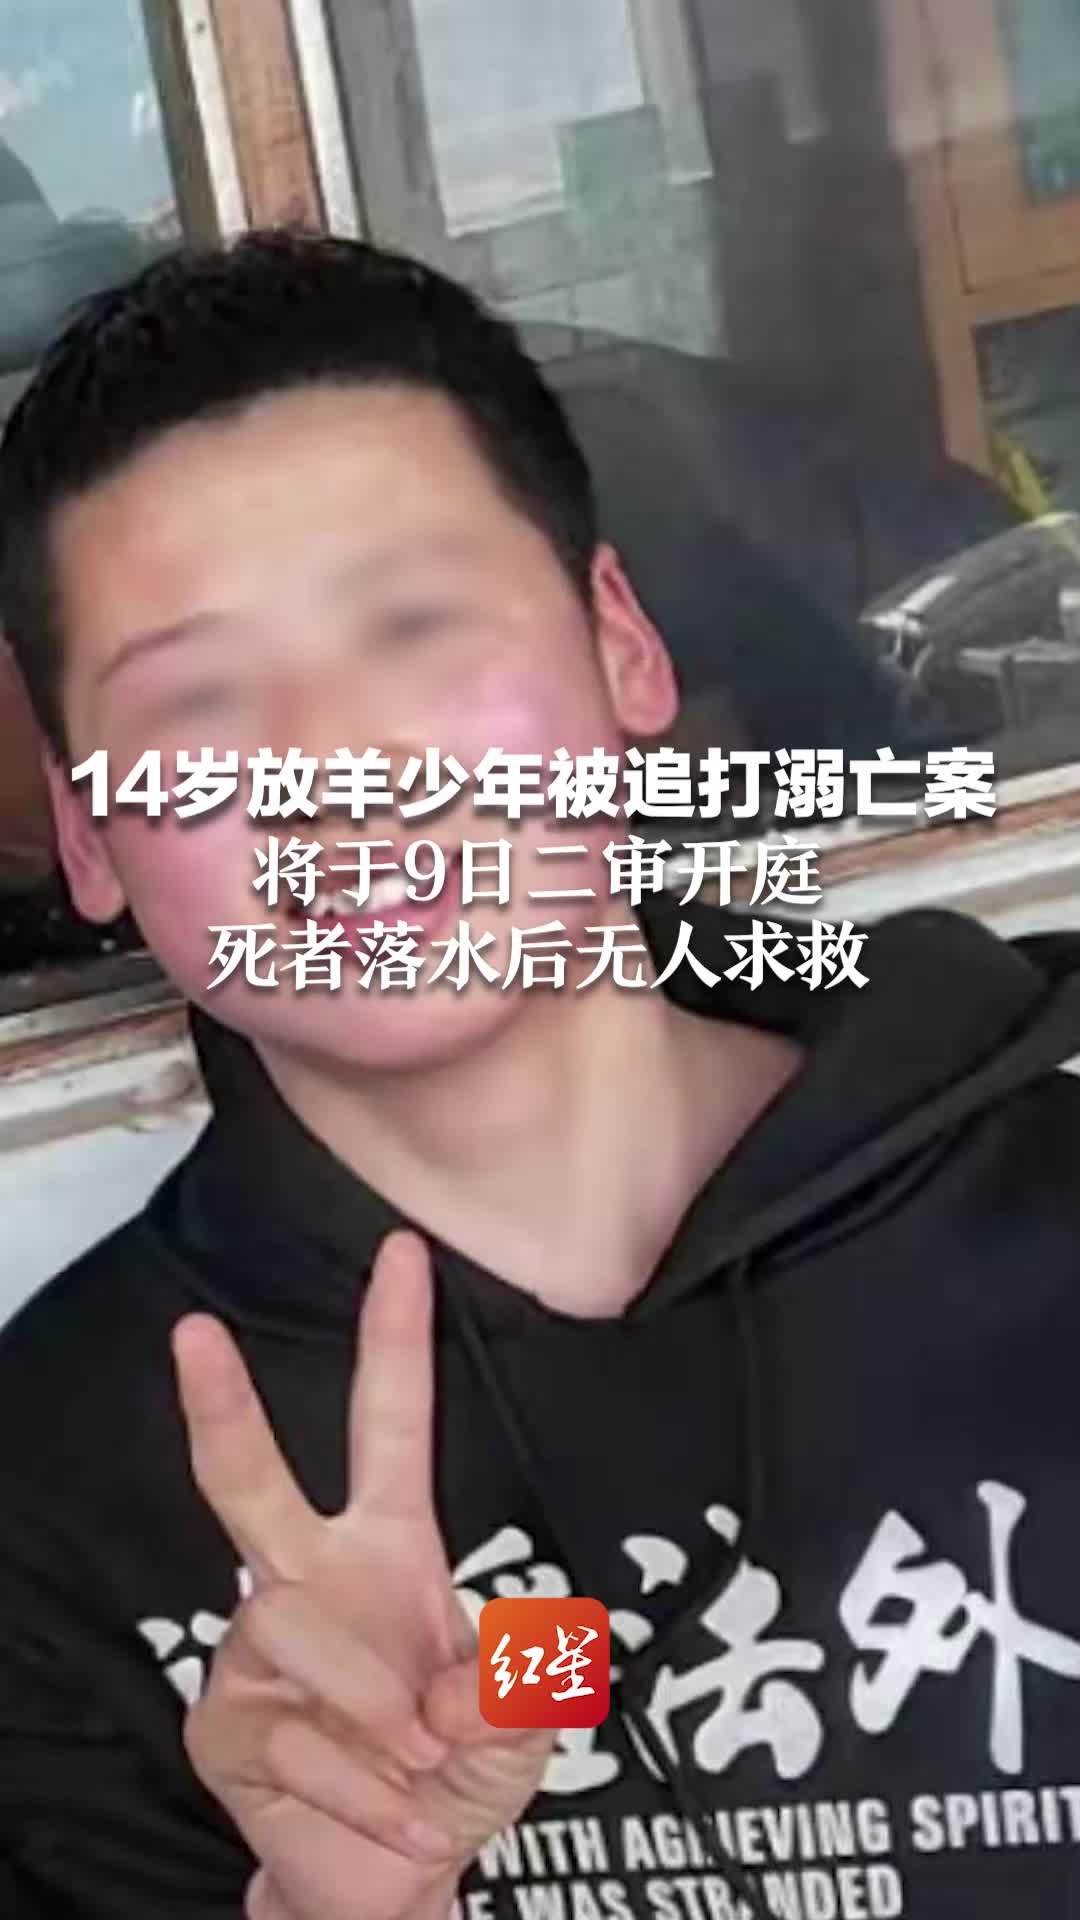 黑龙江14岁放羊少年被追打溺亡案将二审：死者落水后无人求救 霸凌者试图毁灭证据隐瞒真相